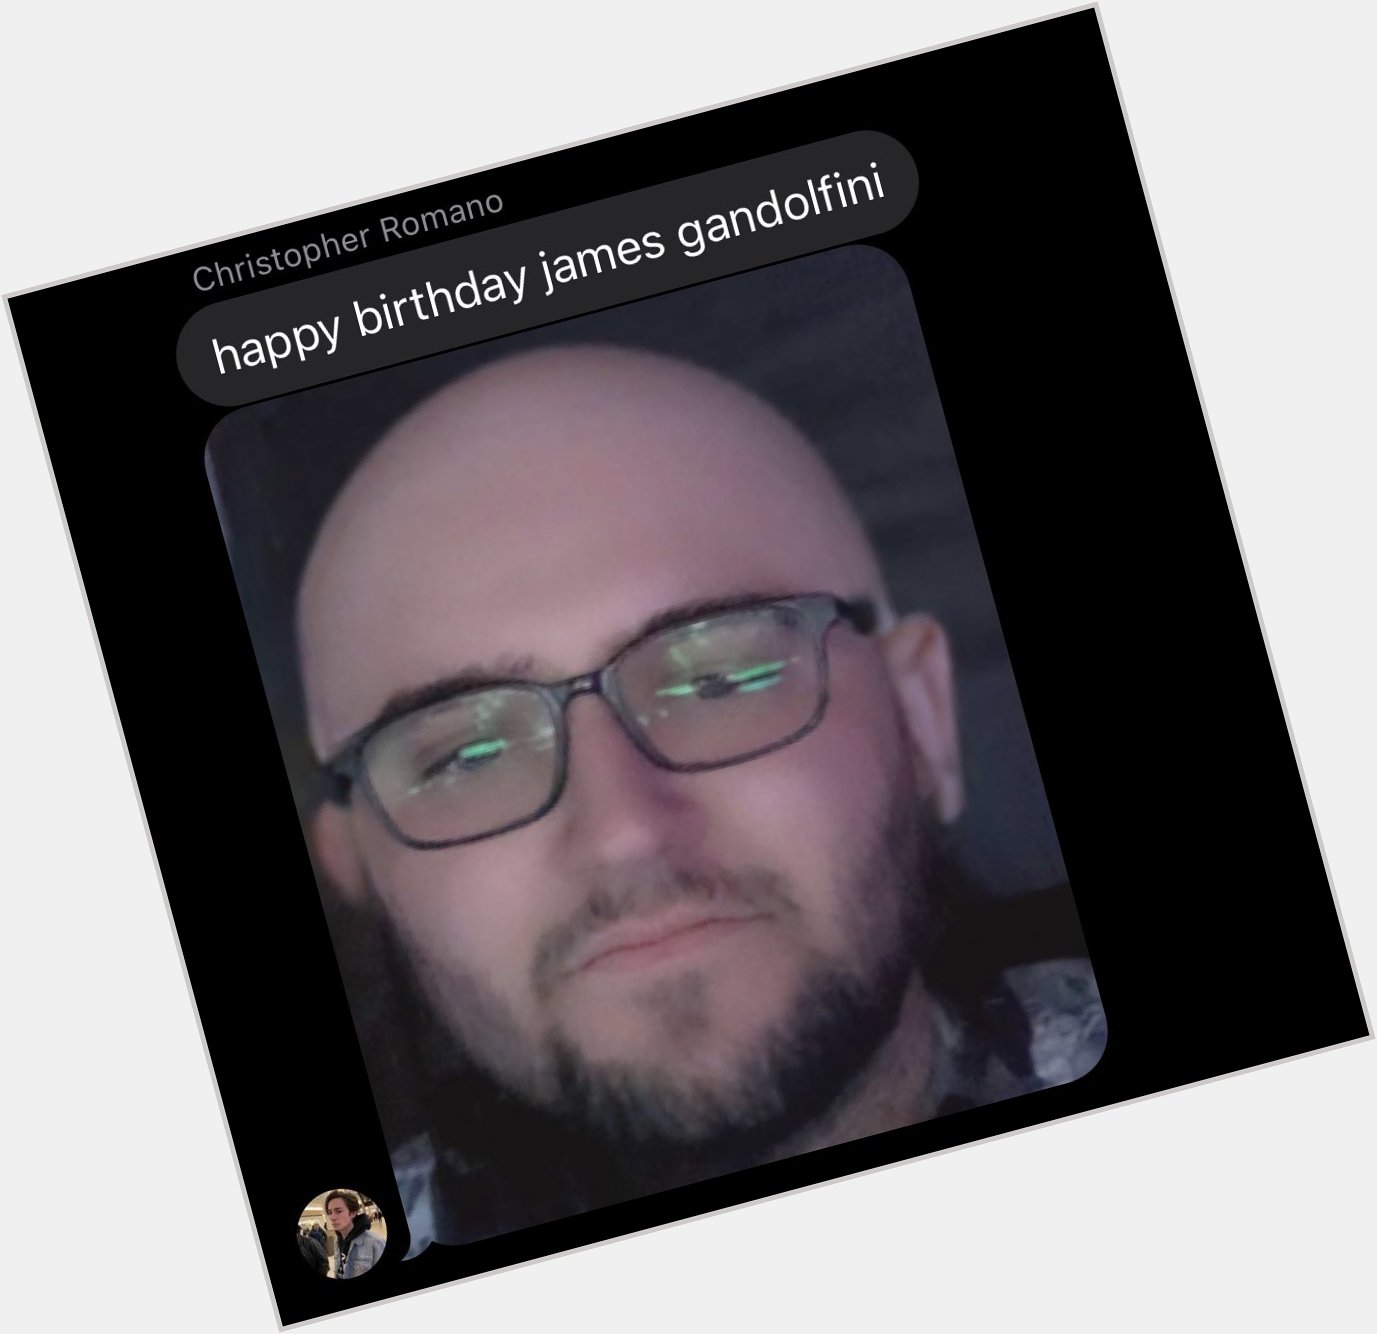 Happy birthday james gandolfini 